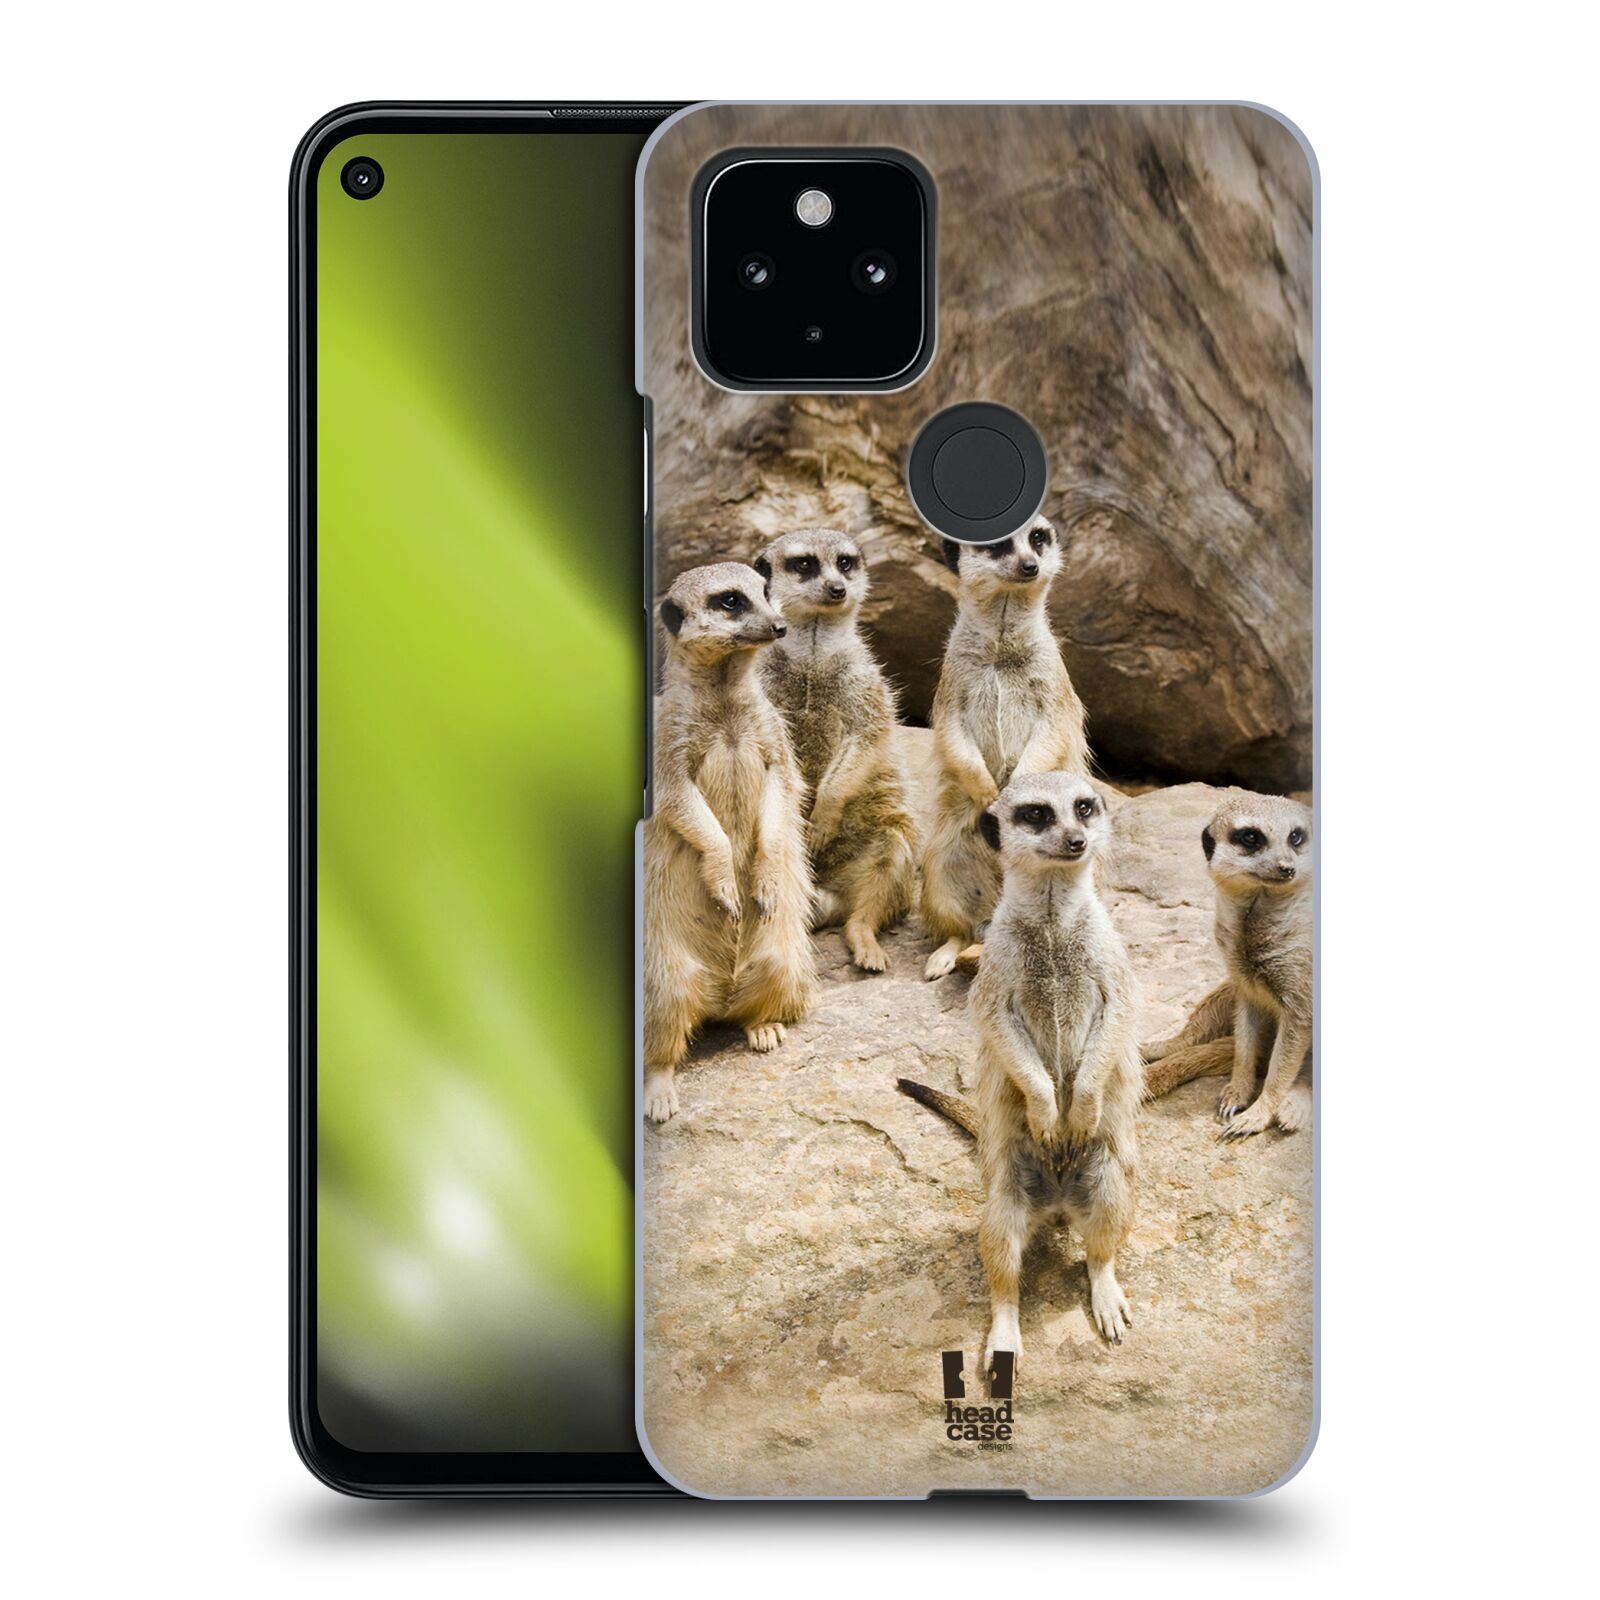 Zadní obal pro mobil Google Pixel 4a 5G - HEAD CASE - Svět zvířat roztomilé surikaty